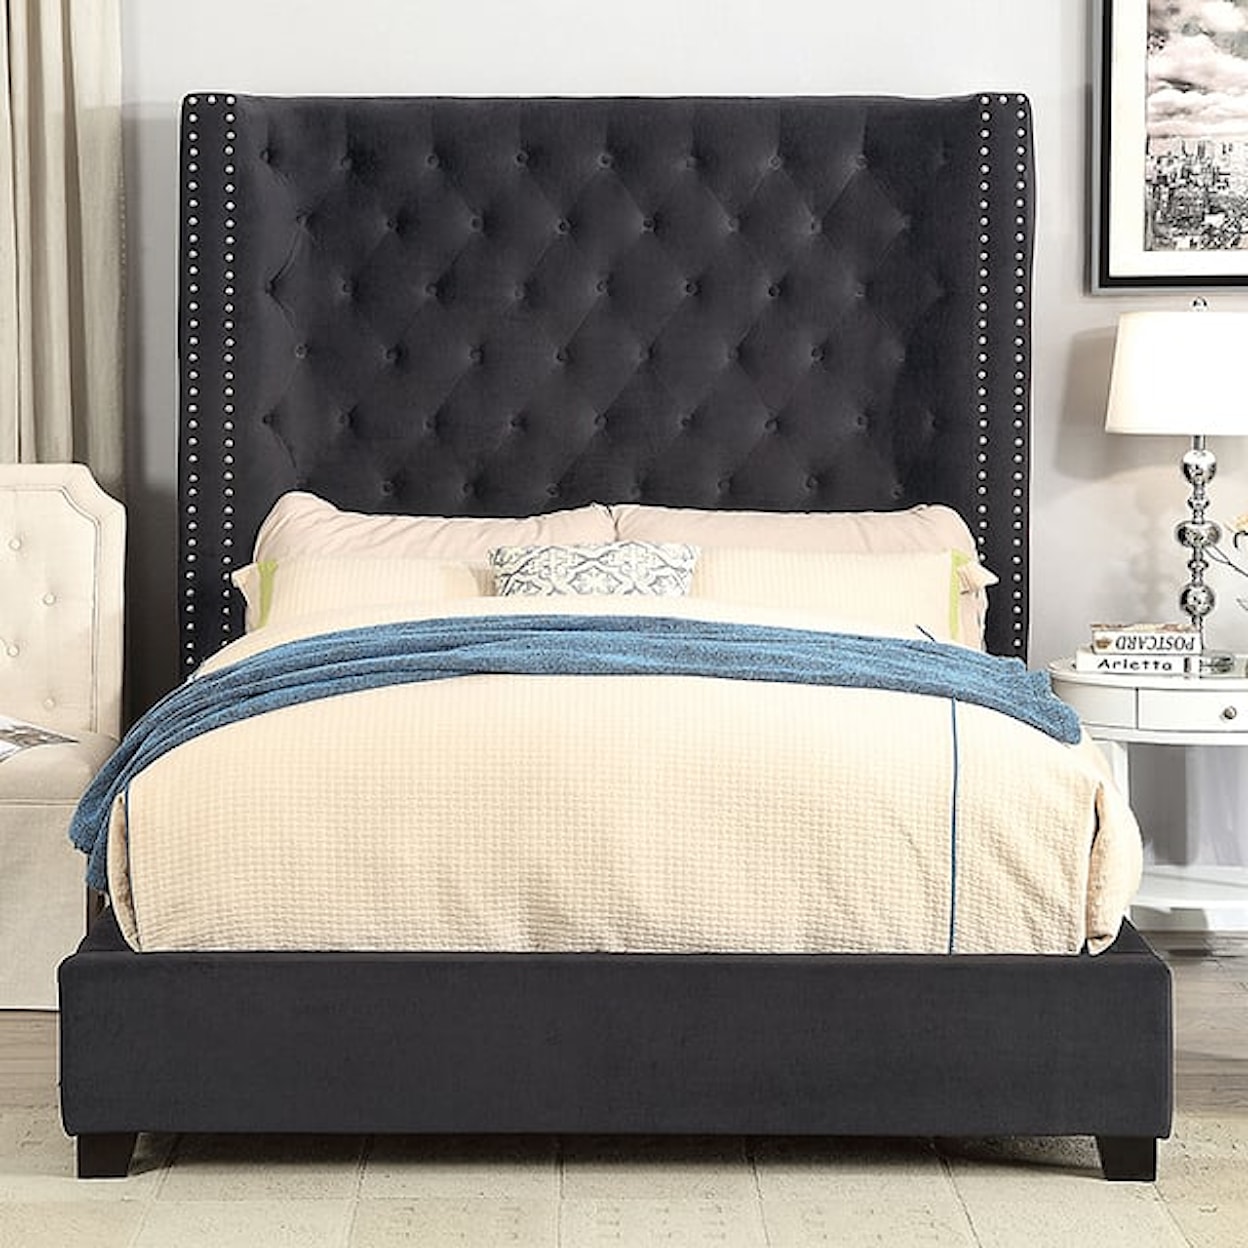 Furniture of America Rosabelle Cali. King Upholstered Bed